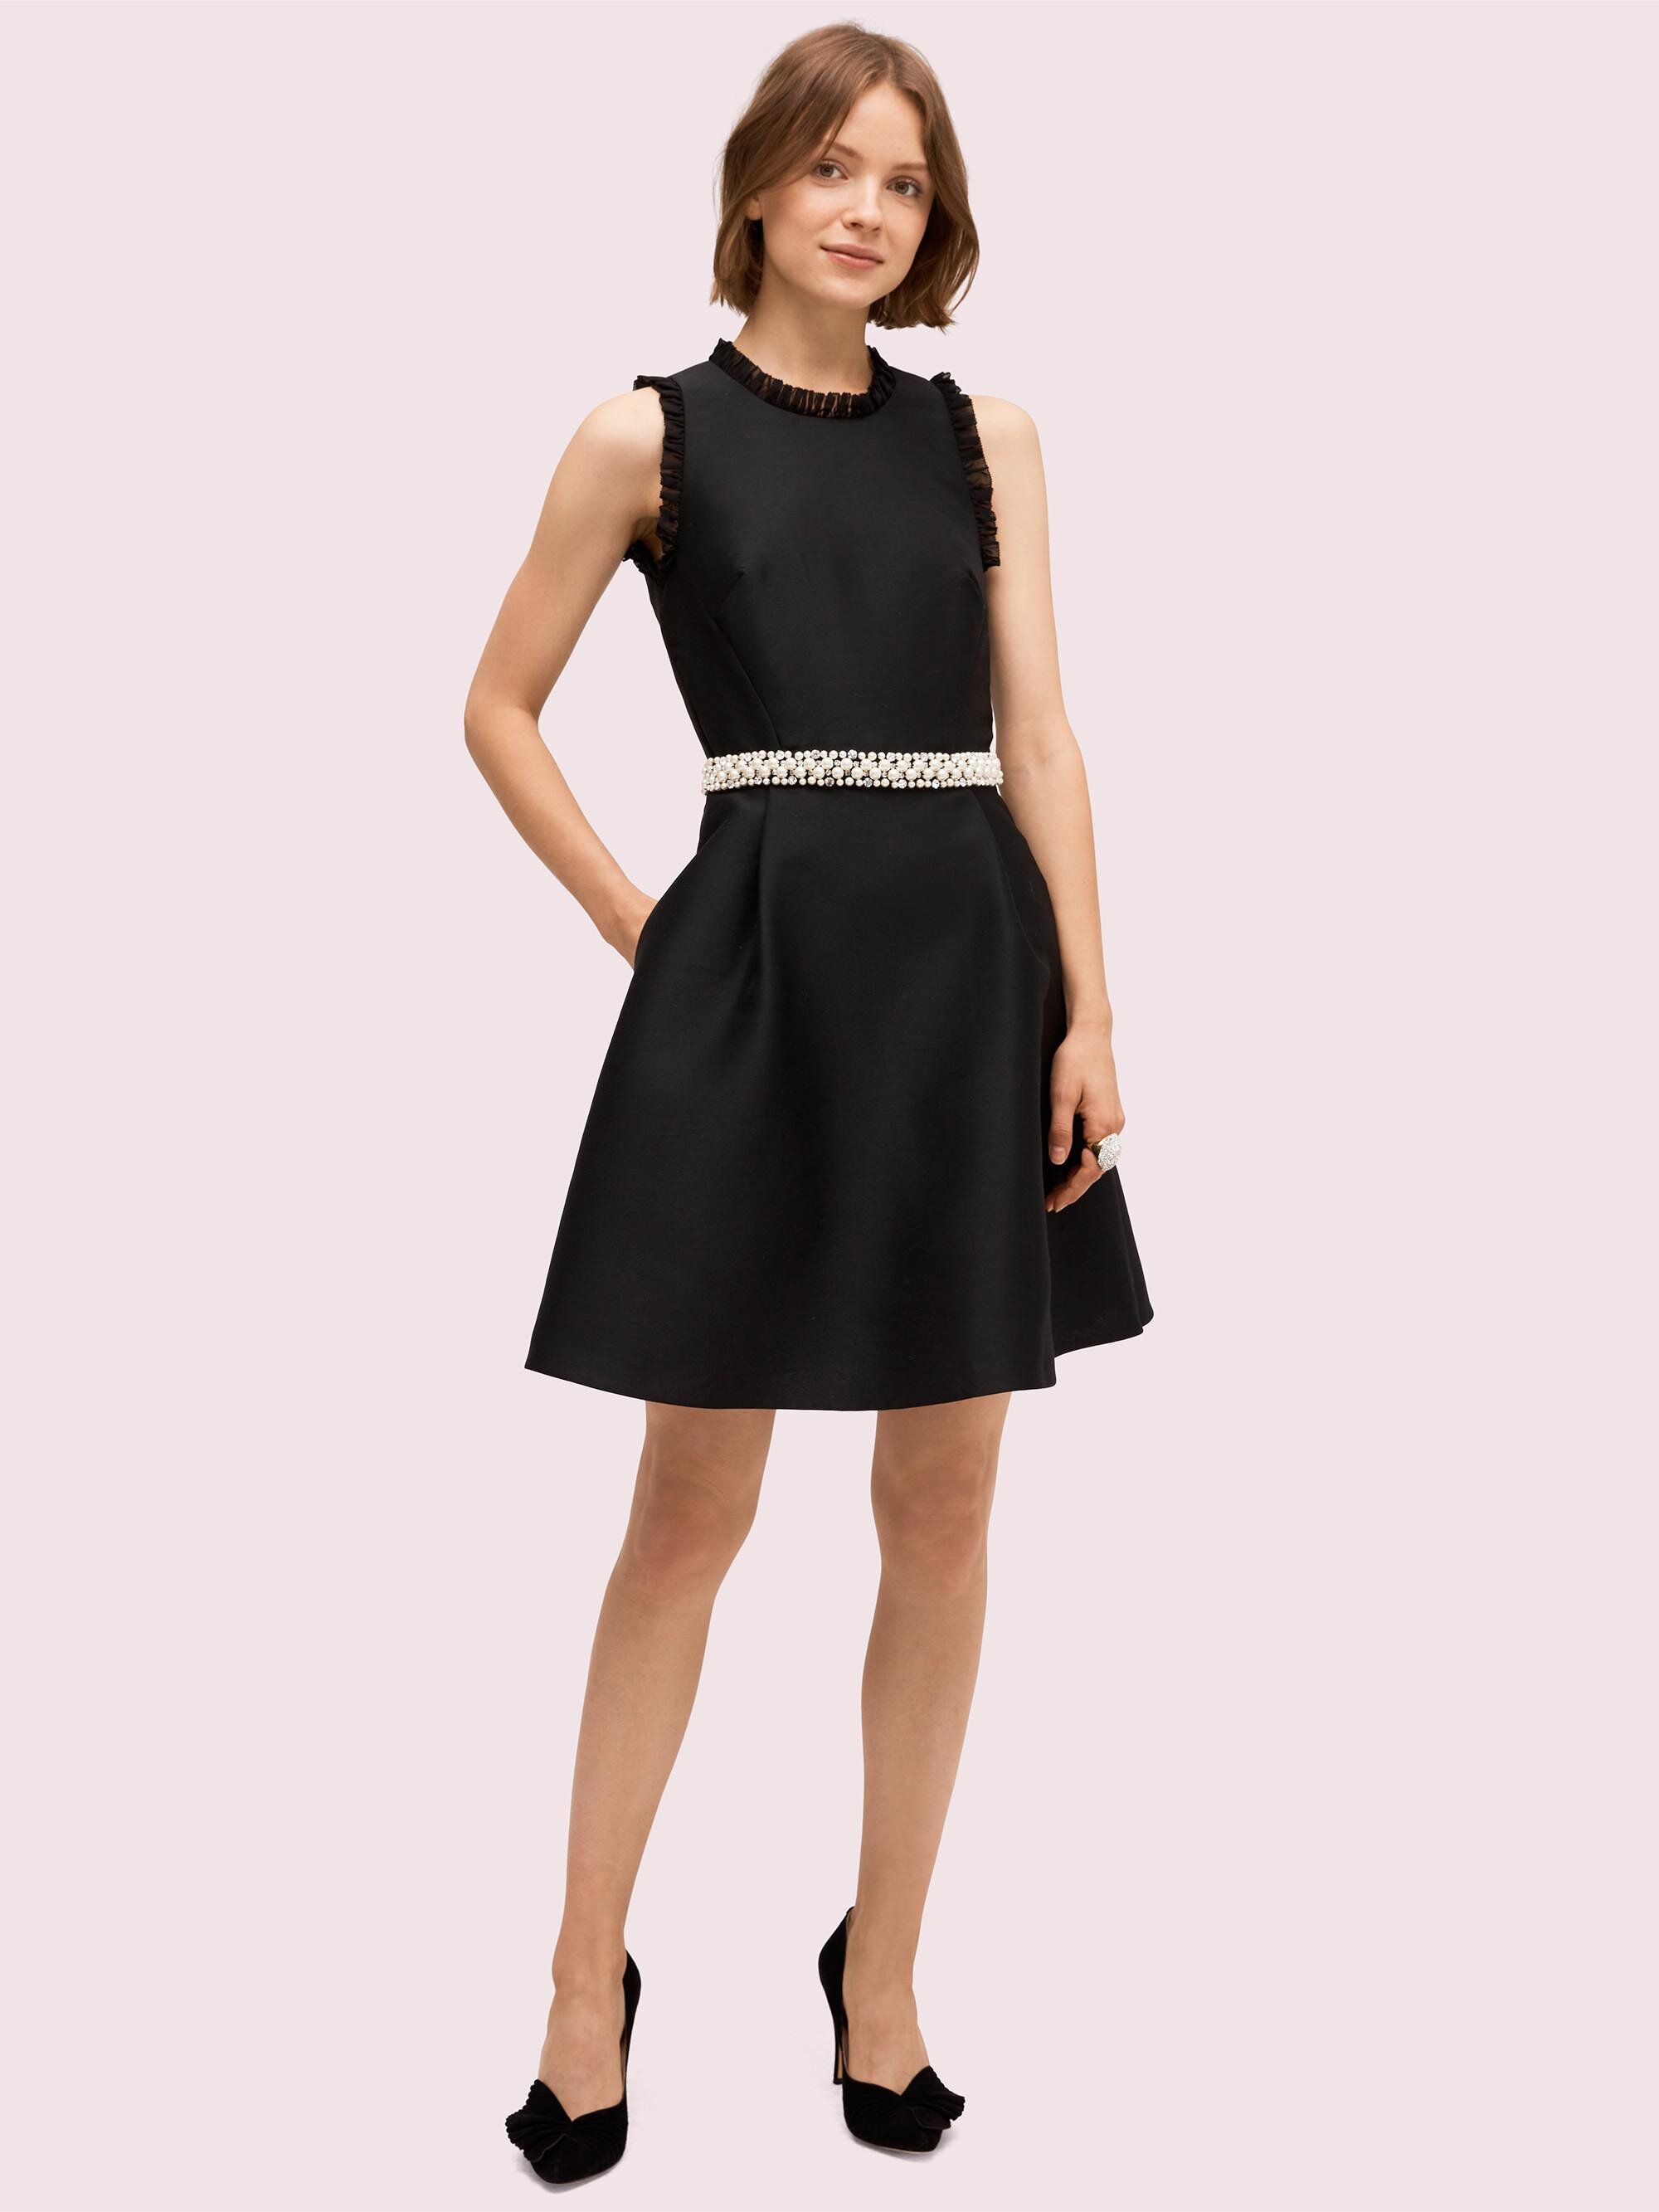 Kate Spade New York Pearl Crystal Mikado Dress in Black.jpg